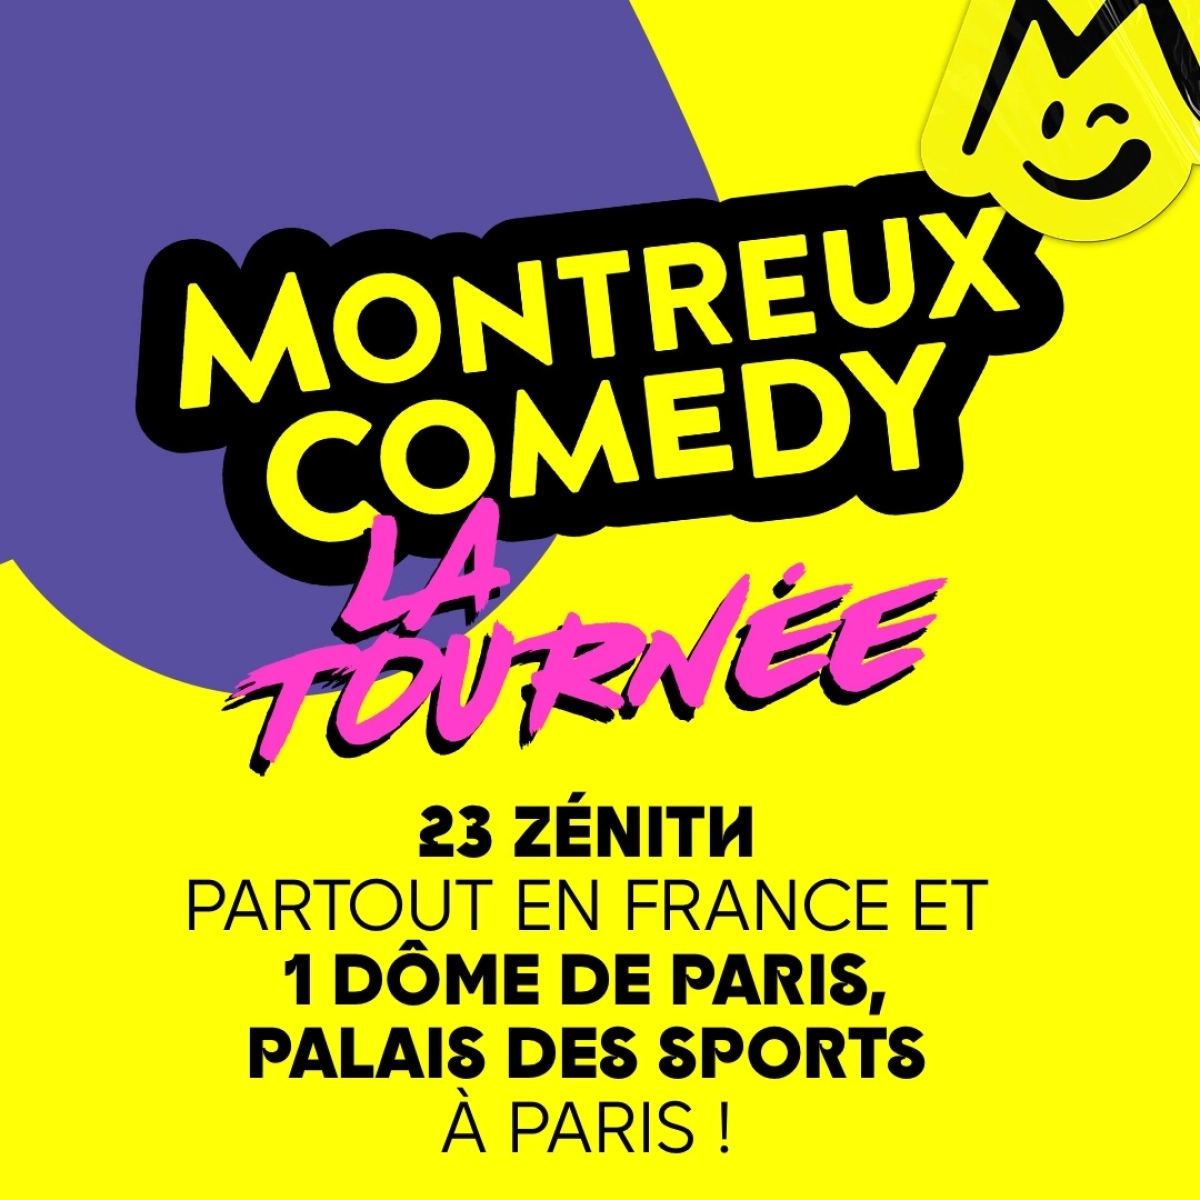 Montreux Comedy - La Tournée al Elispace Tickets